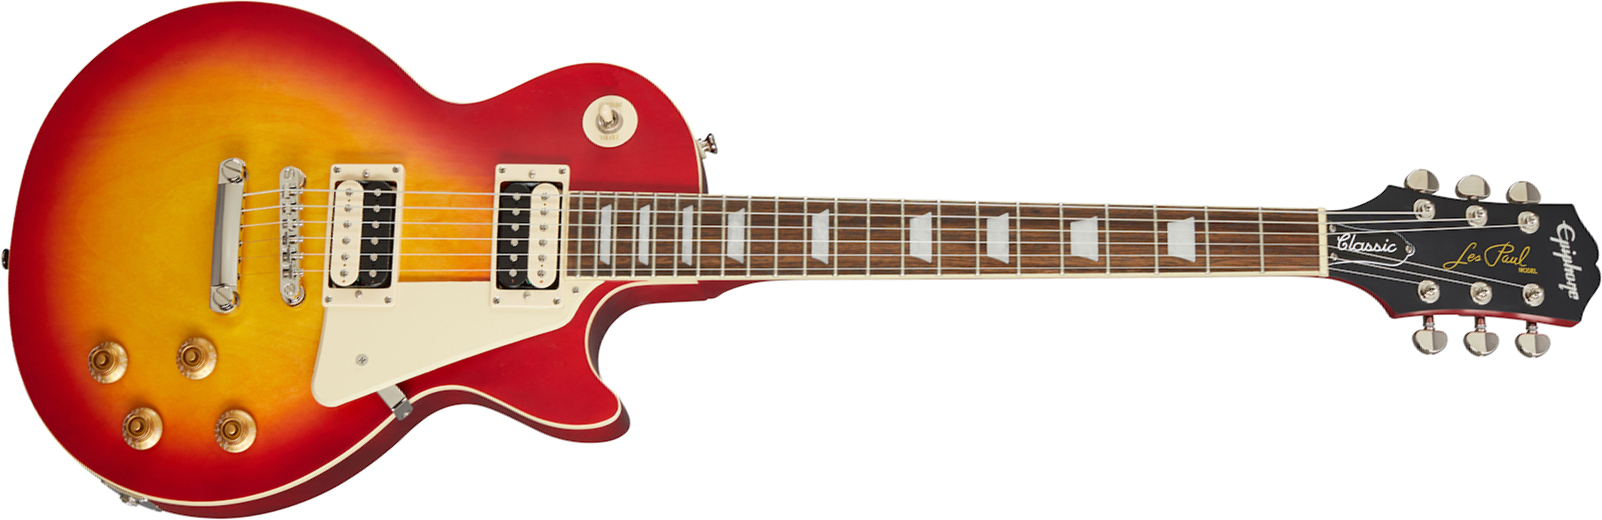 Epiphone Les Paul Classic Worn 2020 Hh Ht Rw - Worn Heritage Cherry Sunburst - Guitarra eléctrica de corte único. - Main picture